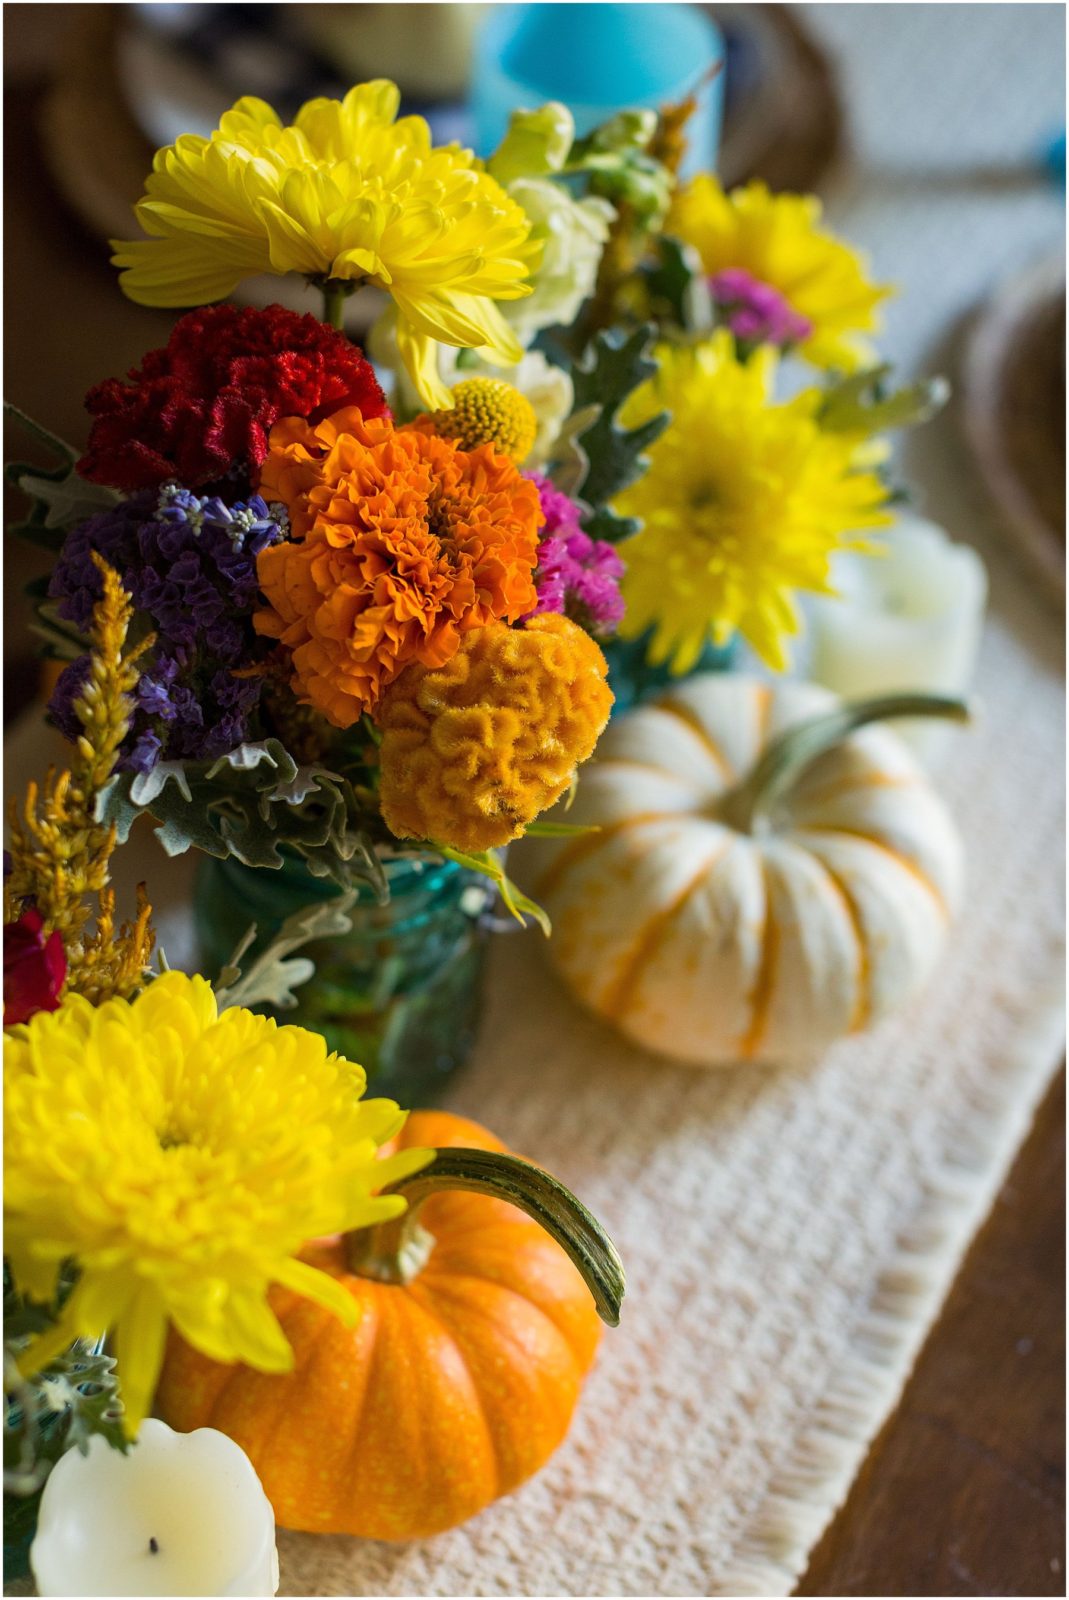 Fall Harvest Table Decor Ideas